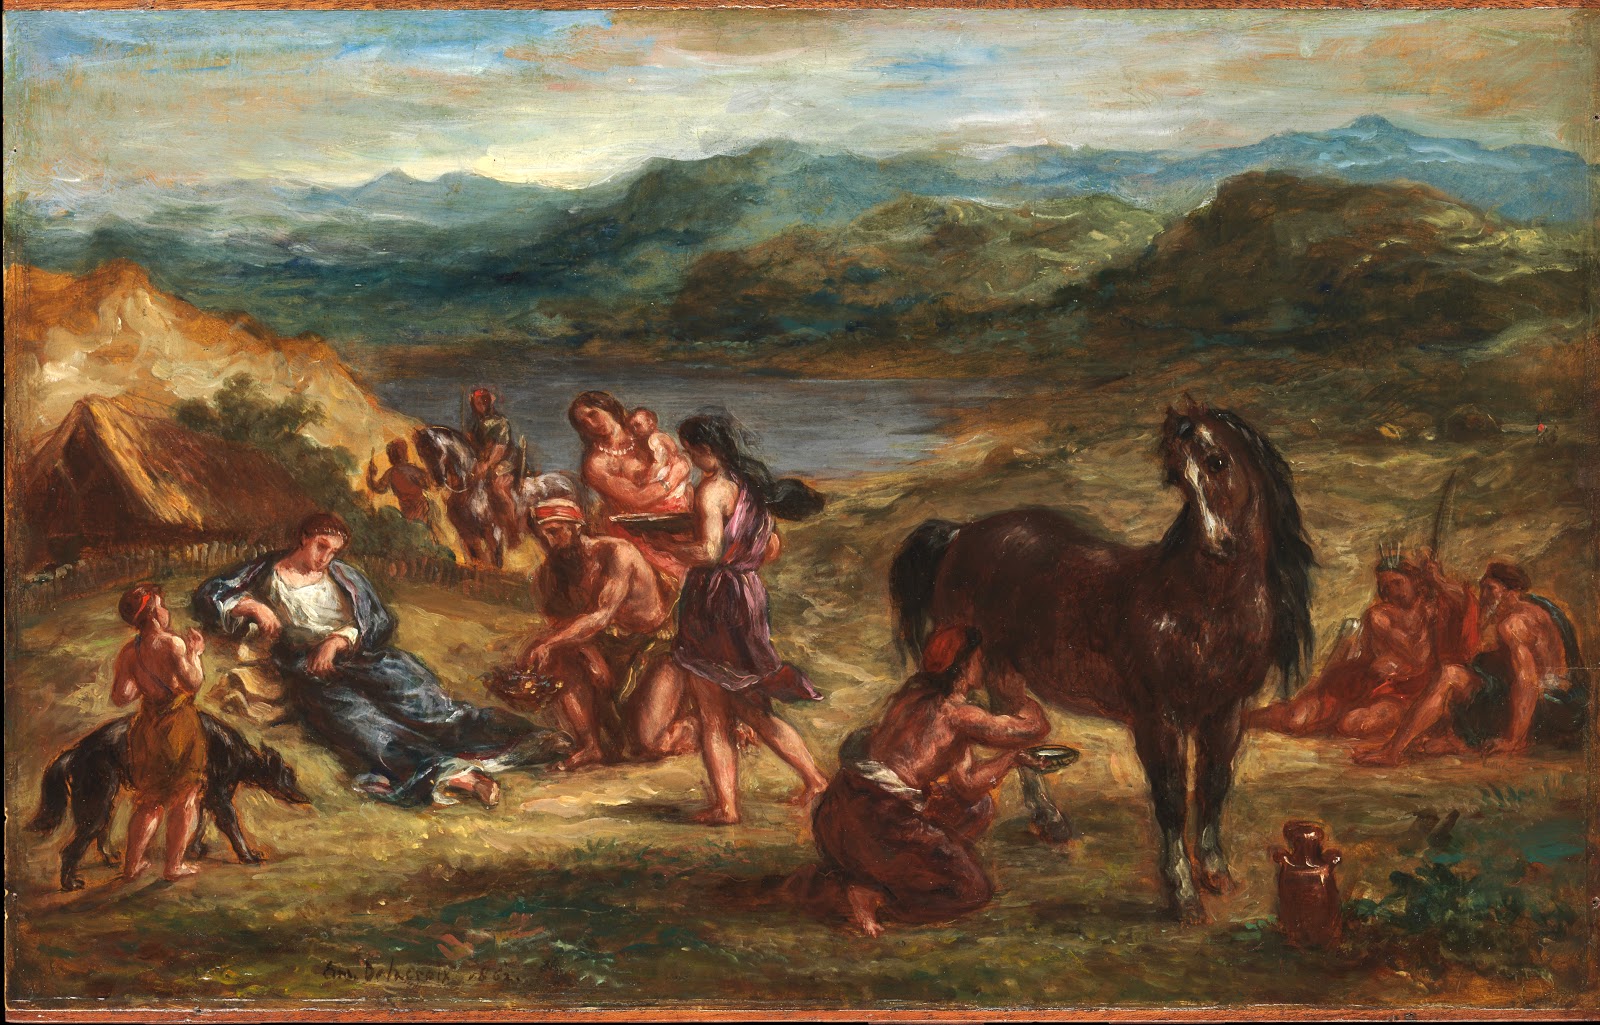 Eugene+Delacroix-1798-1863 (182).jpg